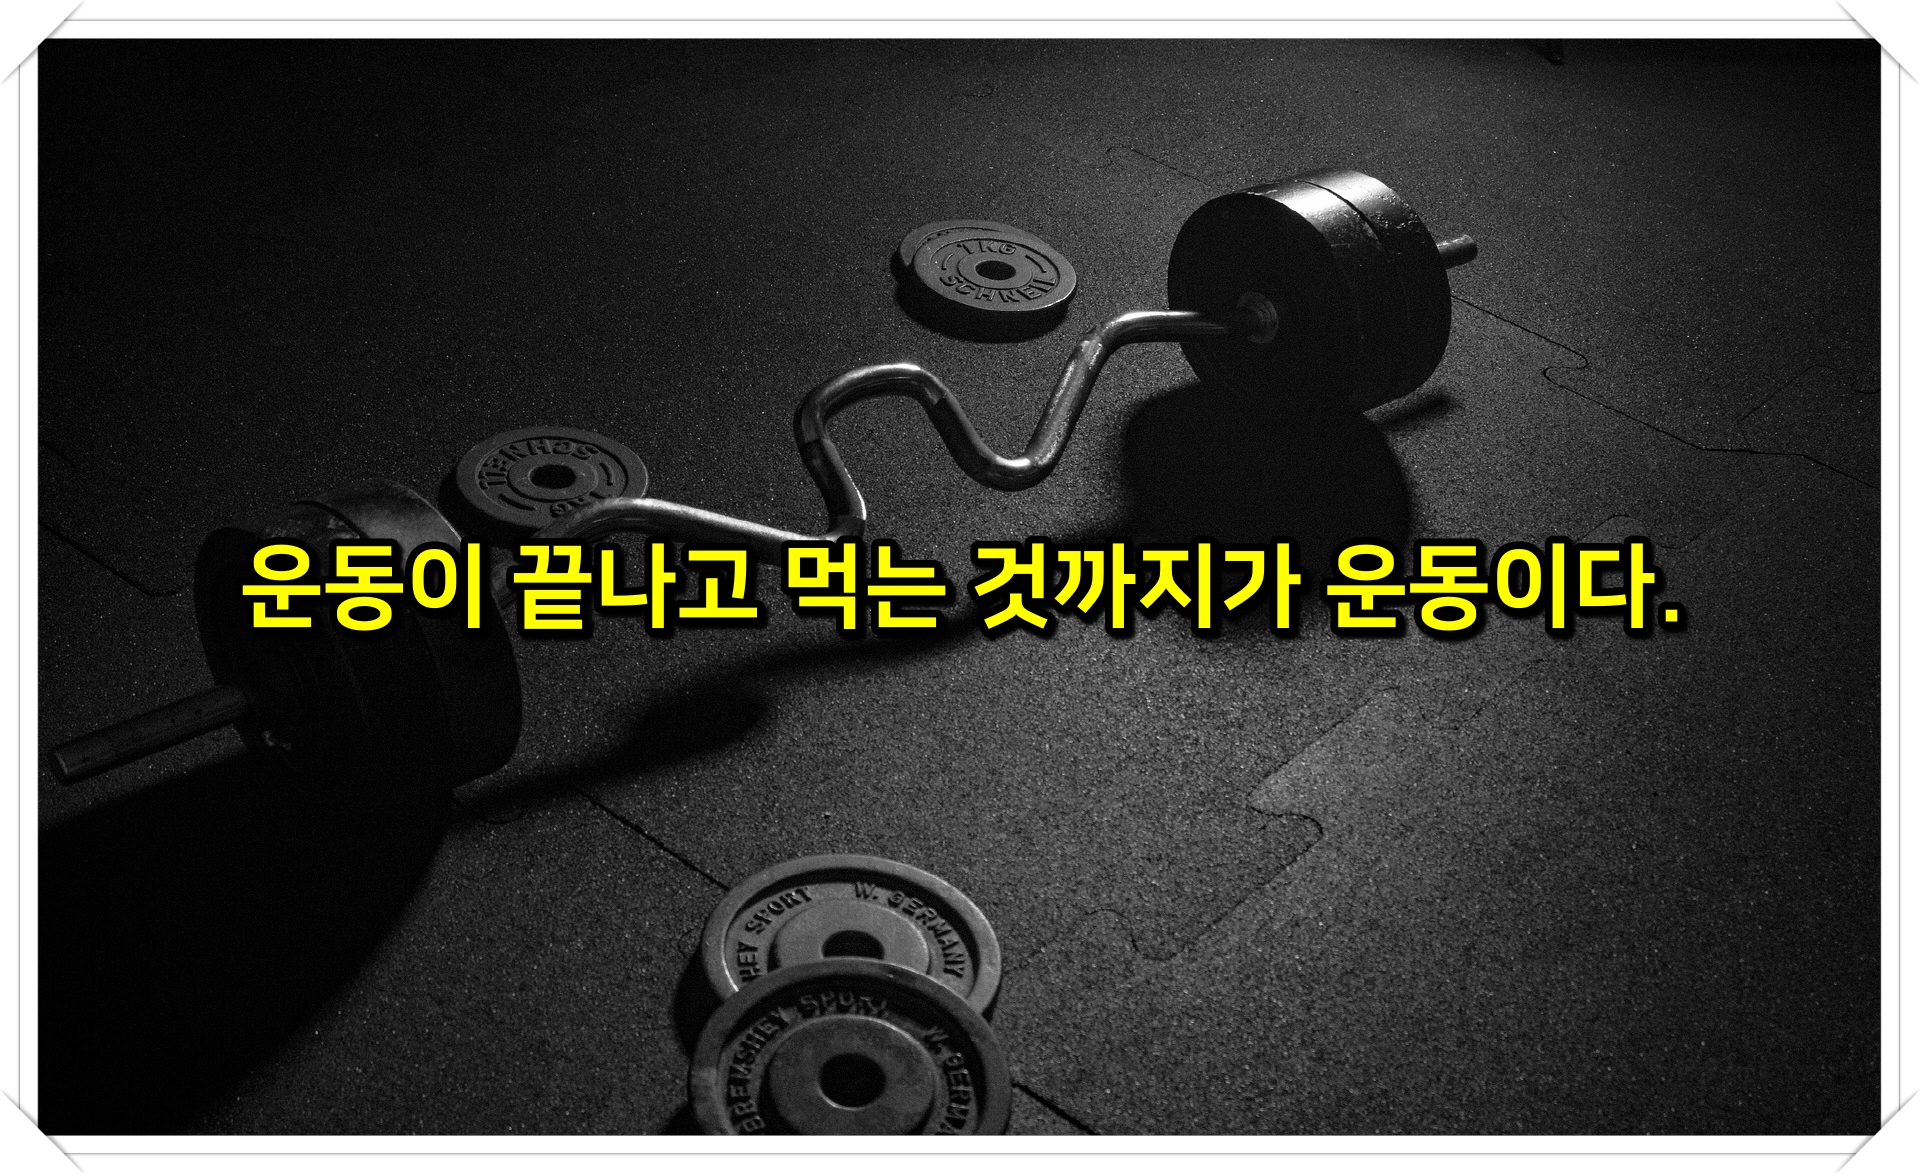 김종국 헬스 운동 다이어트 어록 명언 팁 4